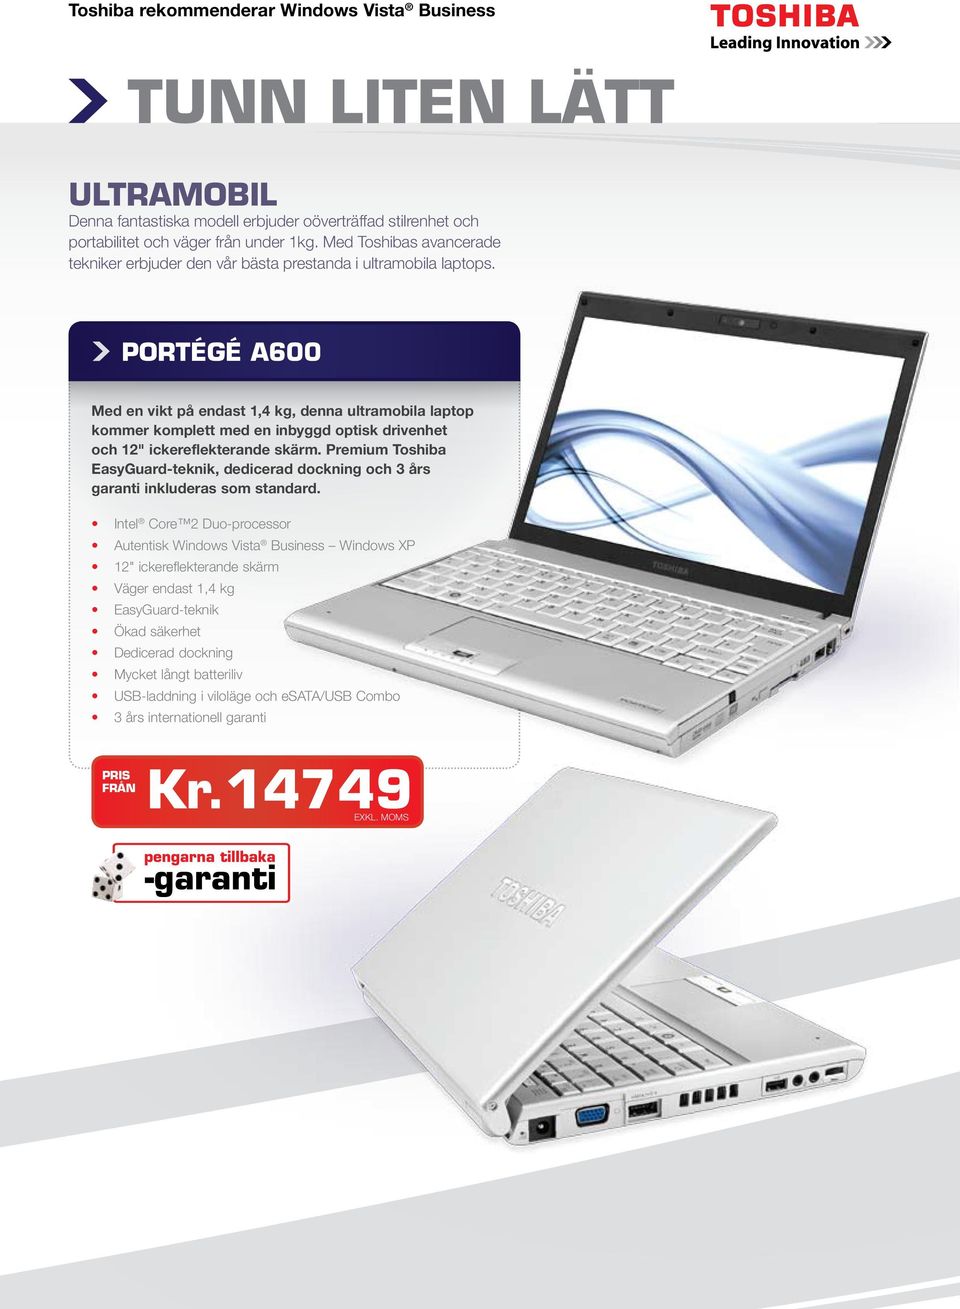 PORTÉGÉ A600 Med en vikt på endast 1,4 kg, denna ultramobila laptop kommer komplett med en inbyggd optisk drivenhet och 12" ickereflekterande skärm.